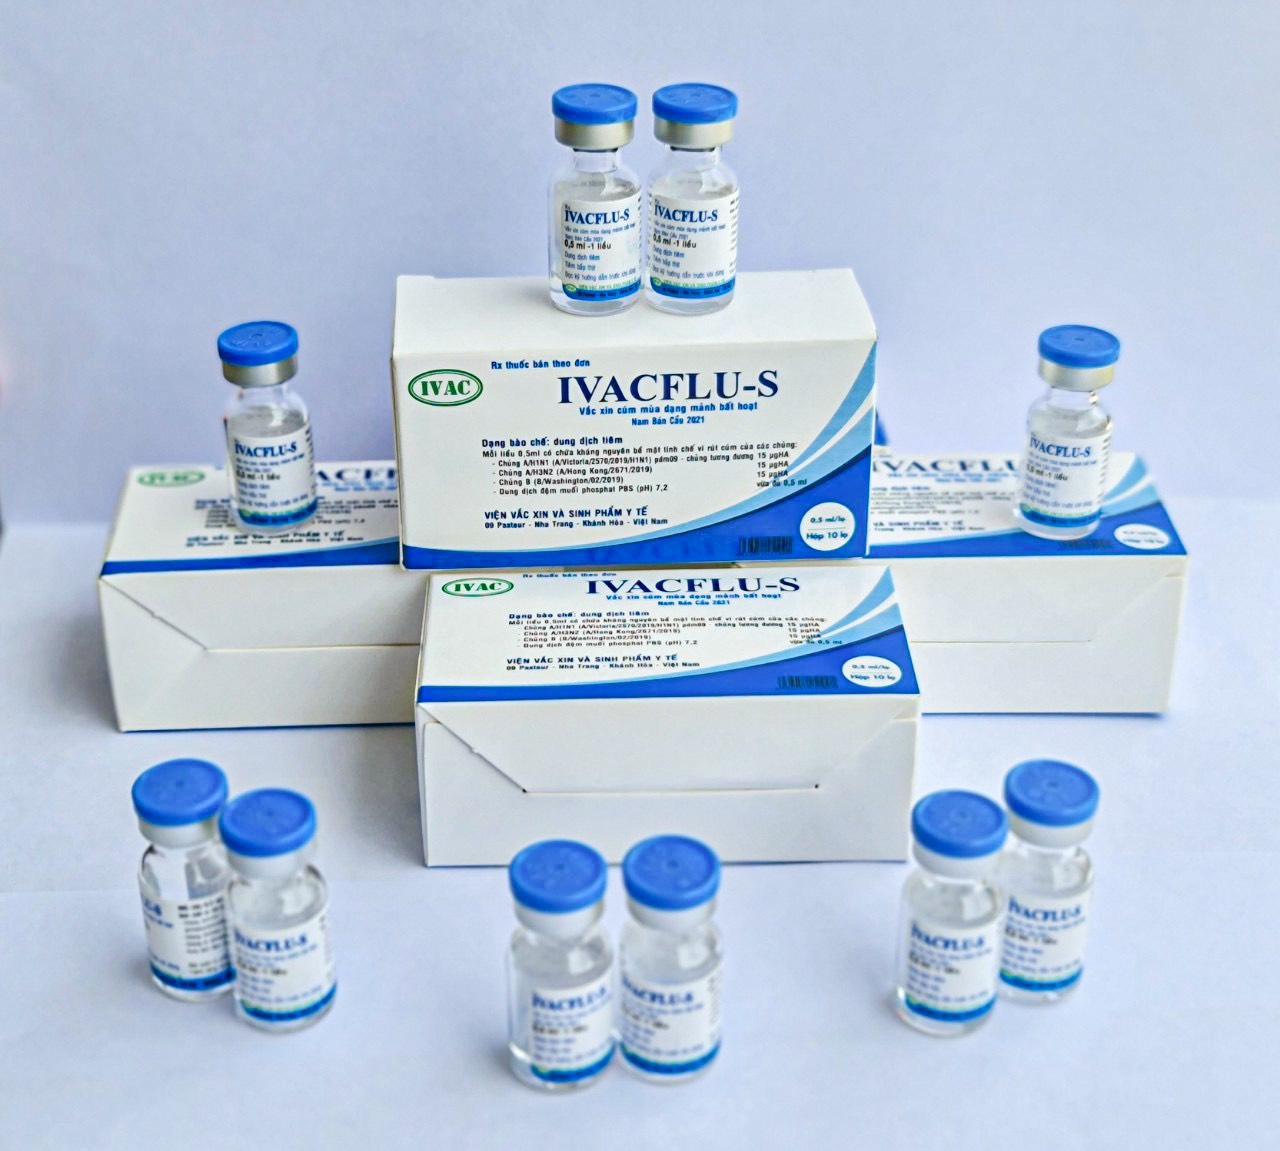 H.1,2: Vắc xin cúm mùa Ivacflu-S do IVAC sản xuất Ảnh: IVAC cung cấp